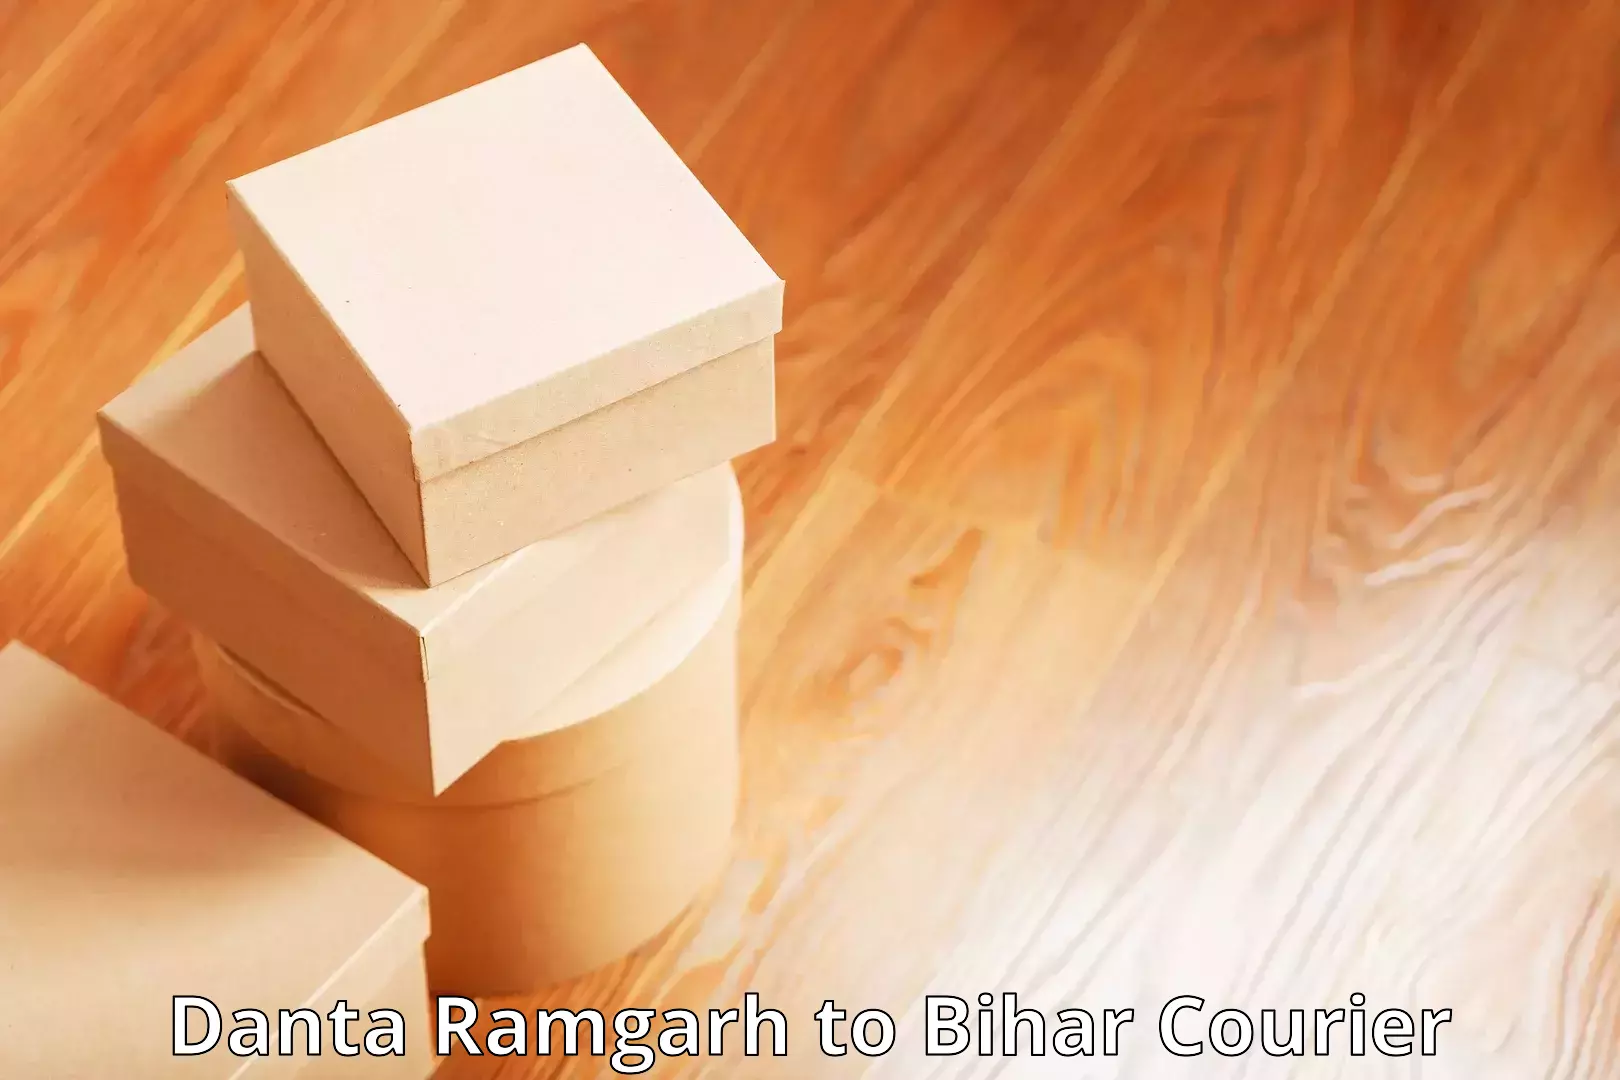 Nationwide courier service Danta Ramgarh to Aurangabad Bihar